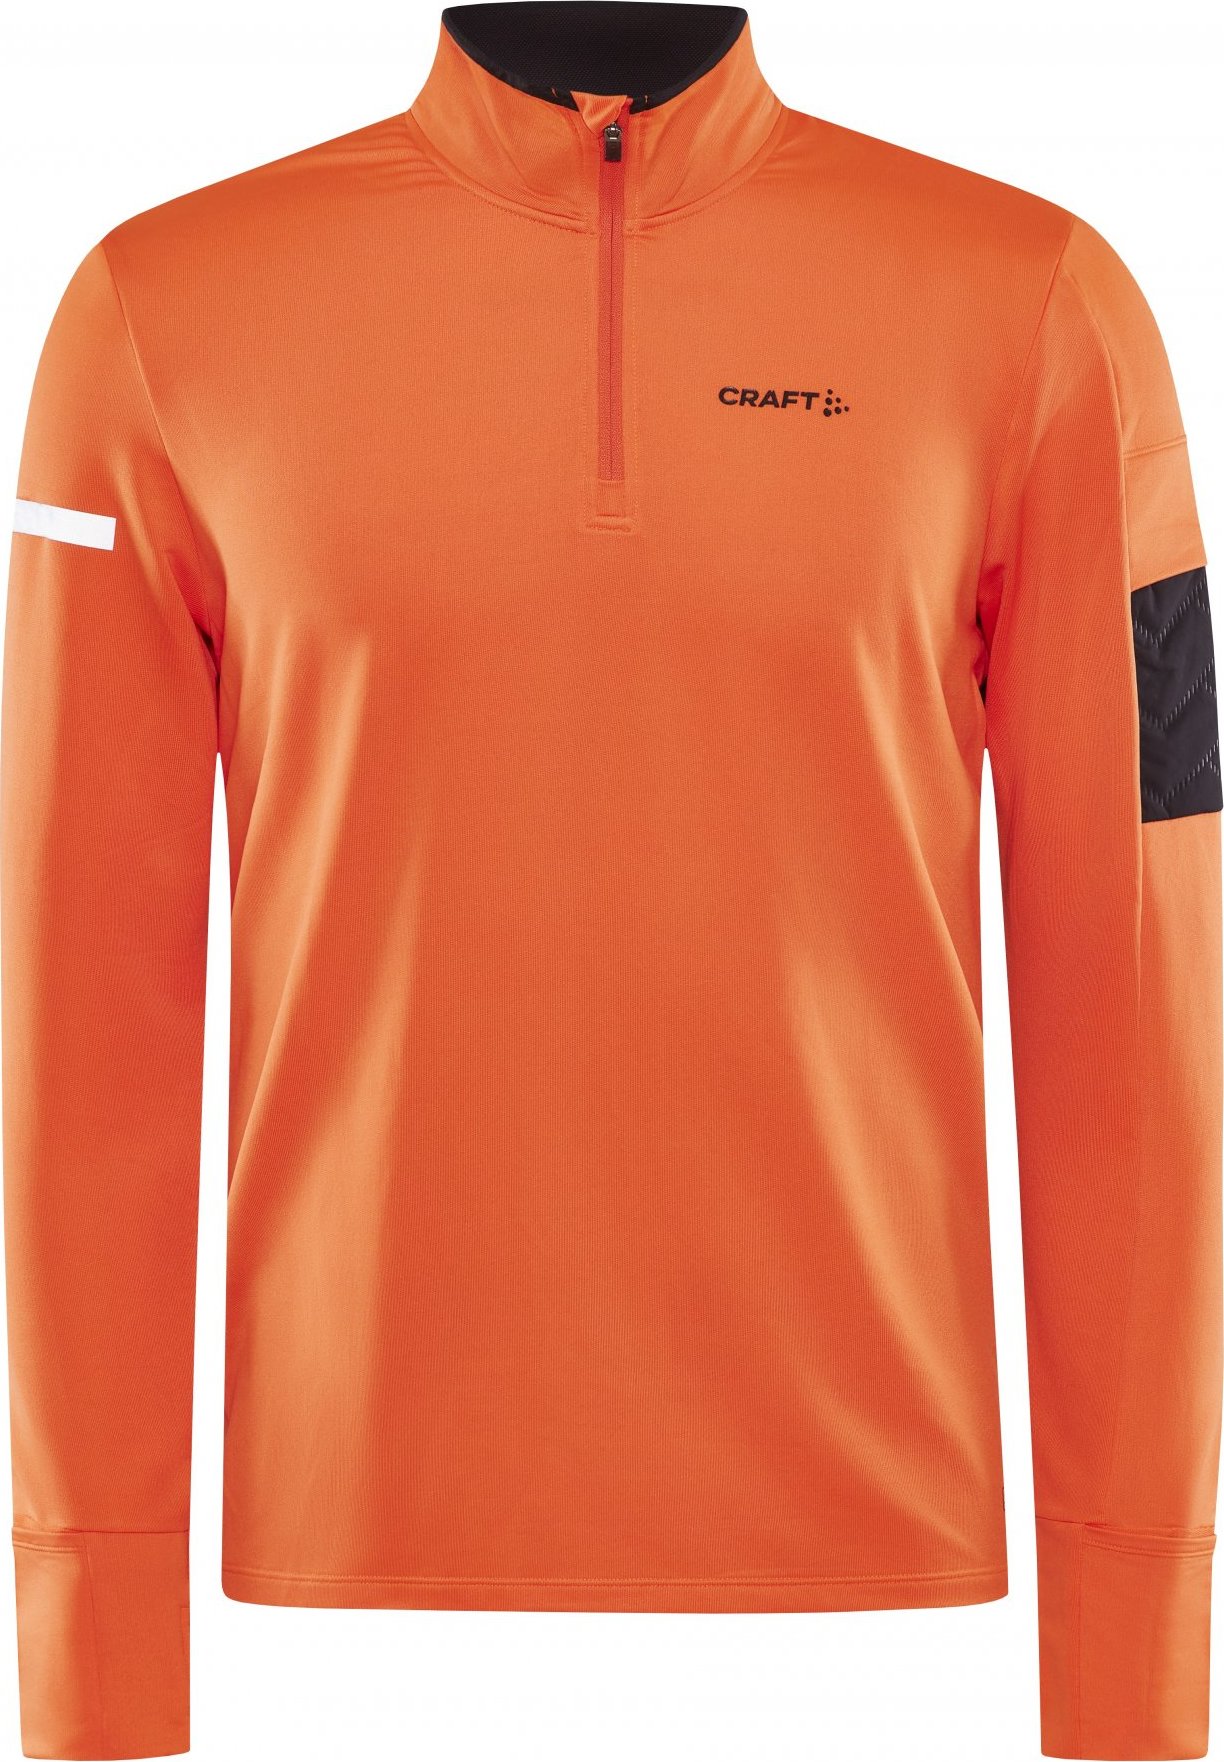 Pánské běžecké triko CRAFT Adv Subz Ls 2 oranžové Velikost: M